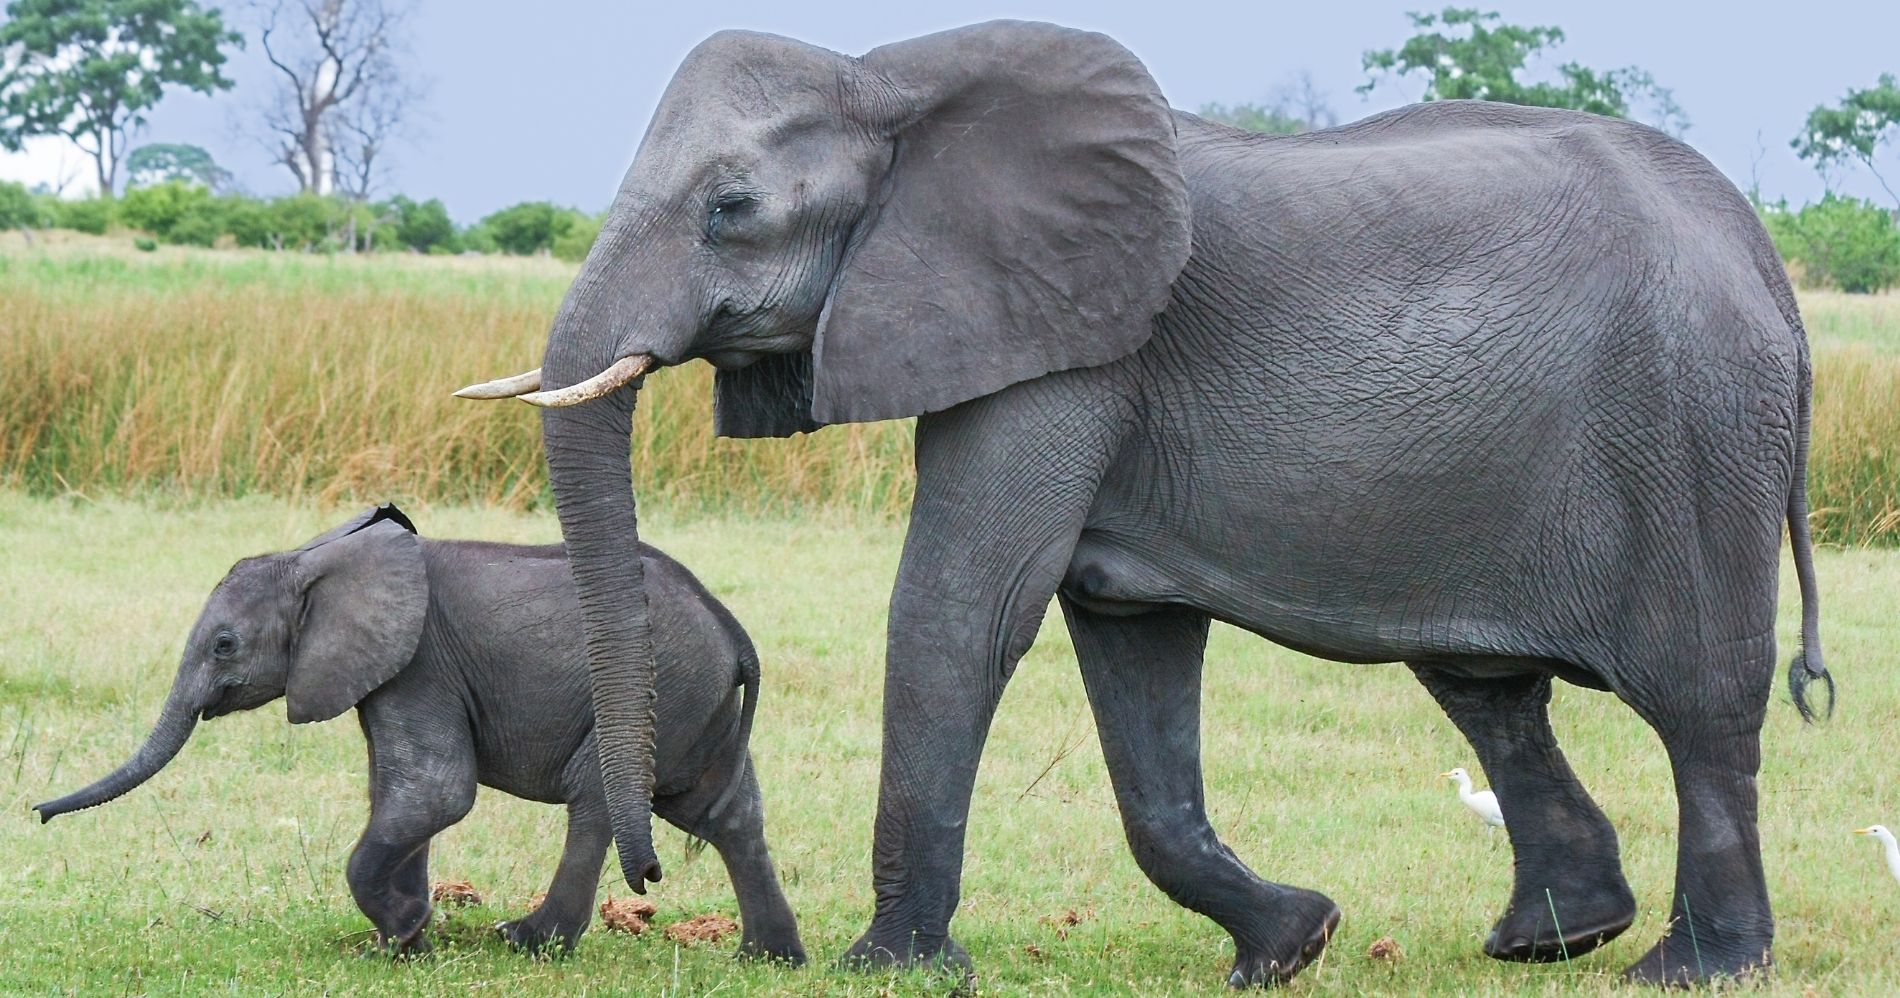 Ilustrasi Gambar Hewan Gajah Besar dan Kecil (Canva)